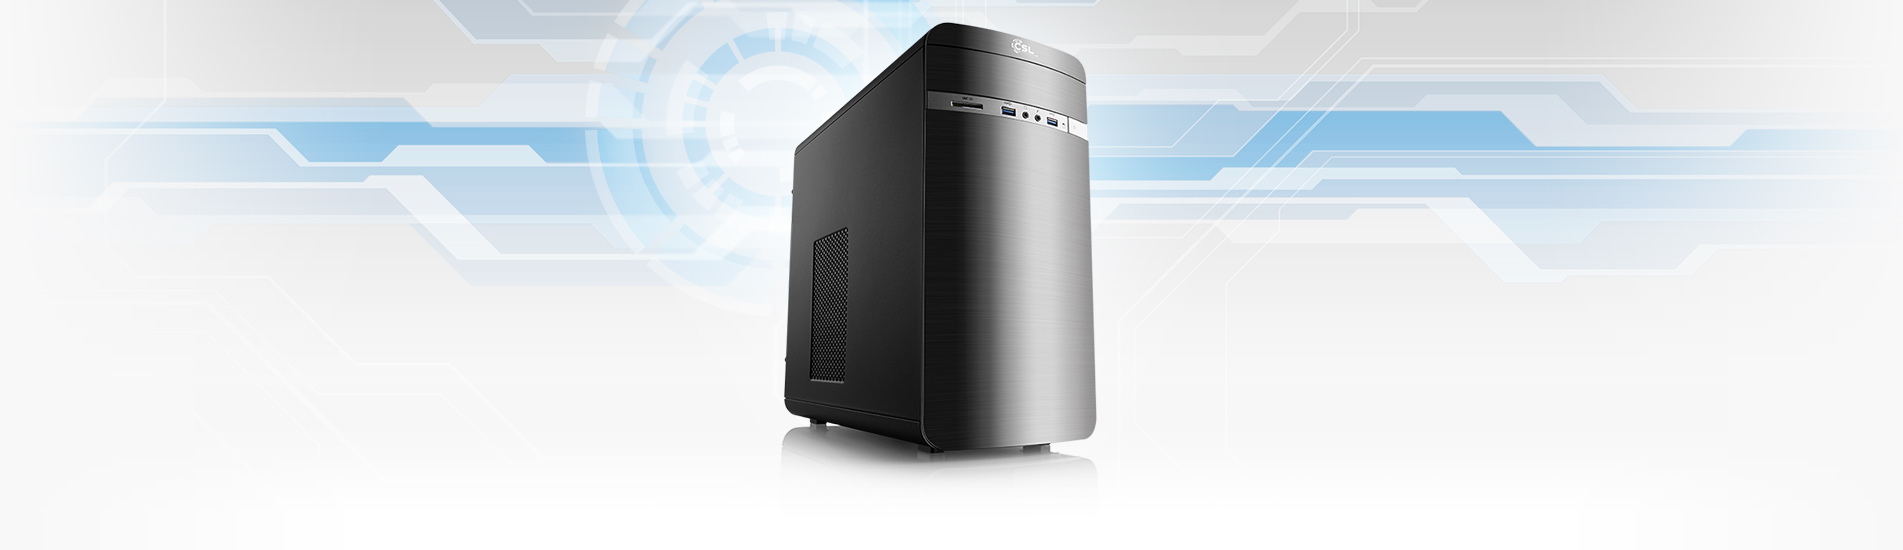 Ein leistungsstarker Allround-PC mit AMD Ryzen™ 5 5500 GT Prozessor zum attraktiven Preis!